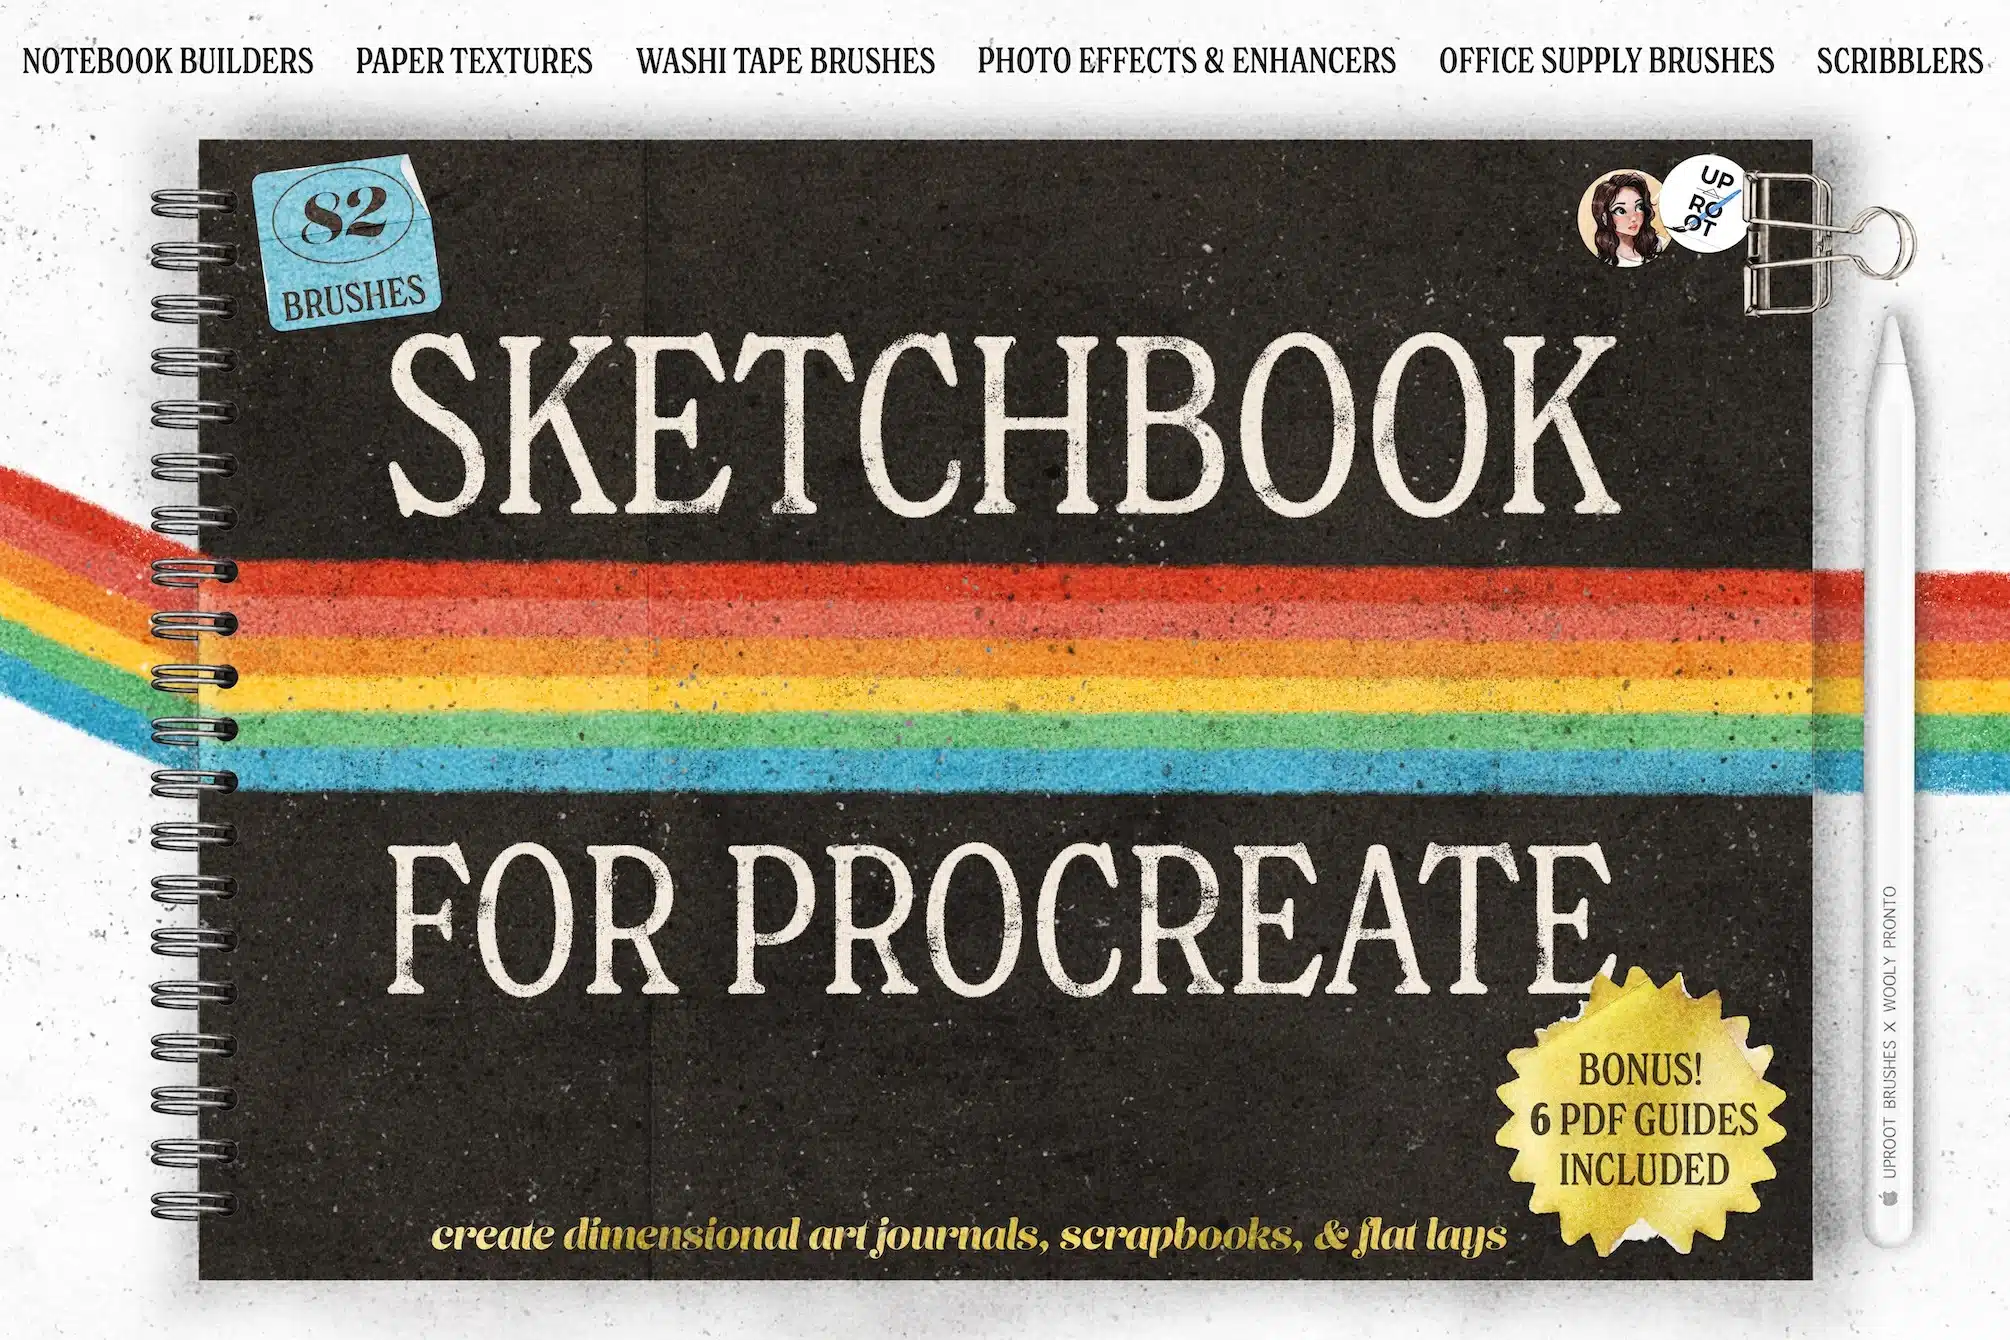 Sketchbook font